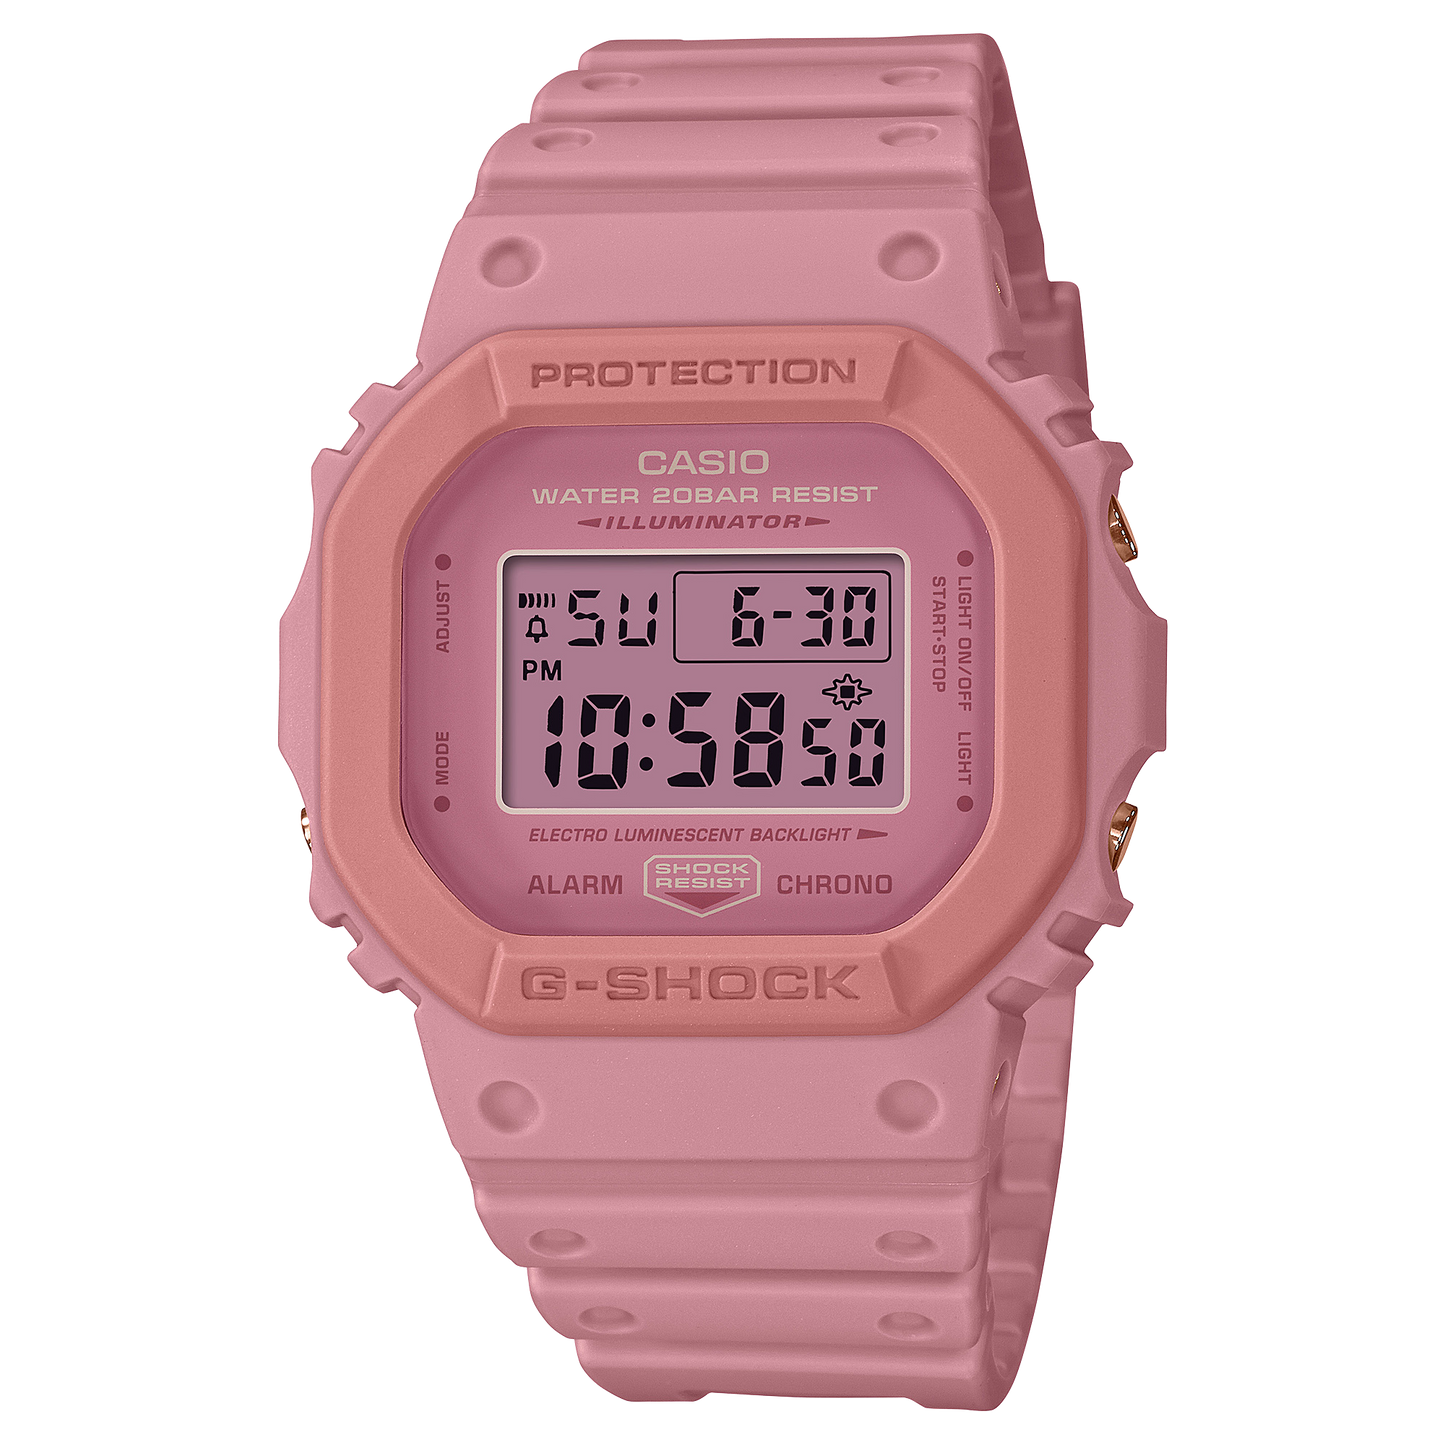 Casio G-Shock DW-5610SL-4A4DR Digital Men's Watch Pink